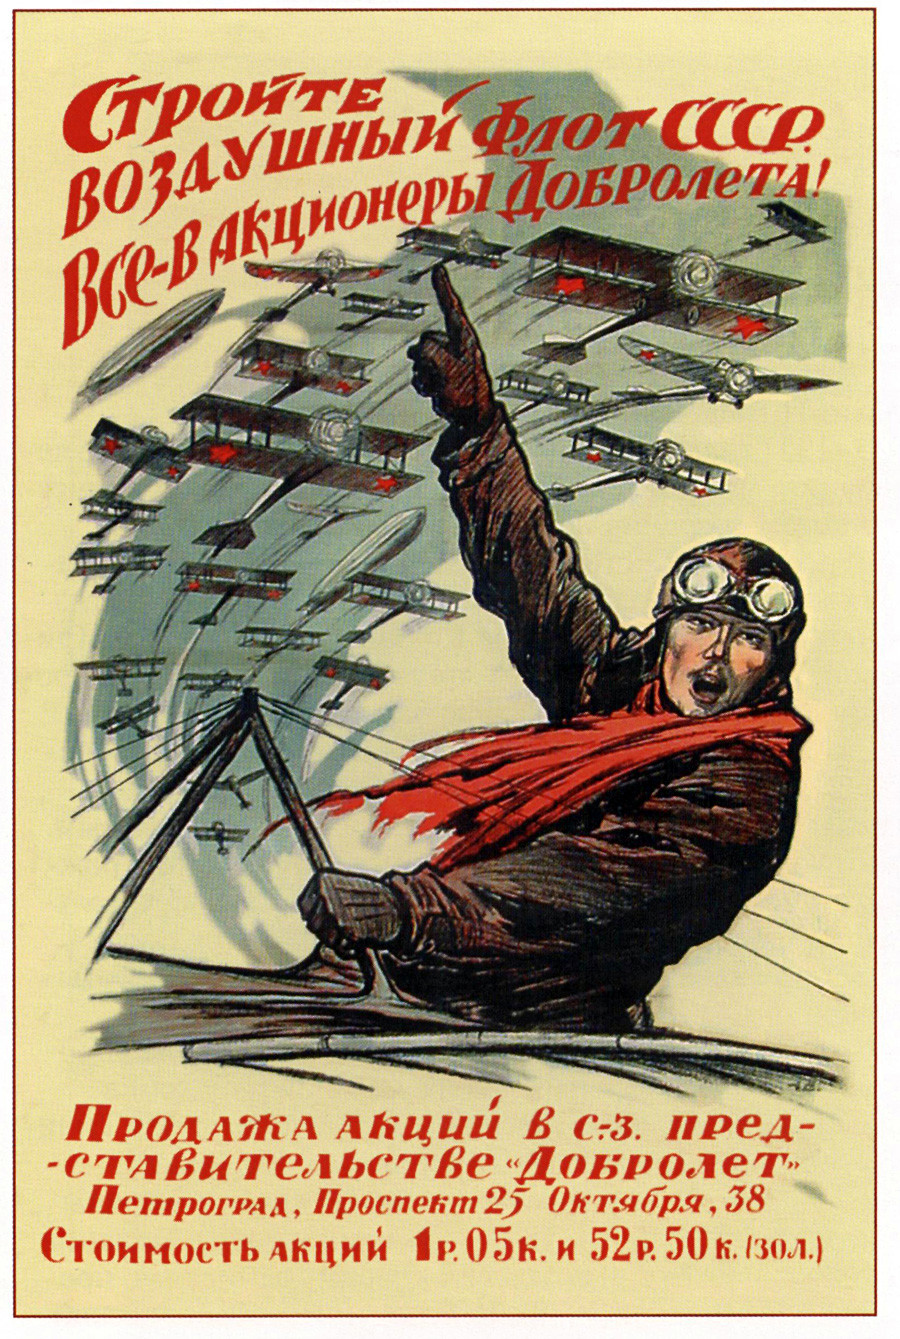 5. ¡Construid la flota aérea soviética! ¡Todos, convertid en accionistas de Dobroliot!